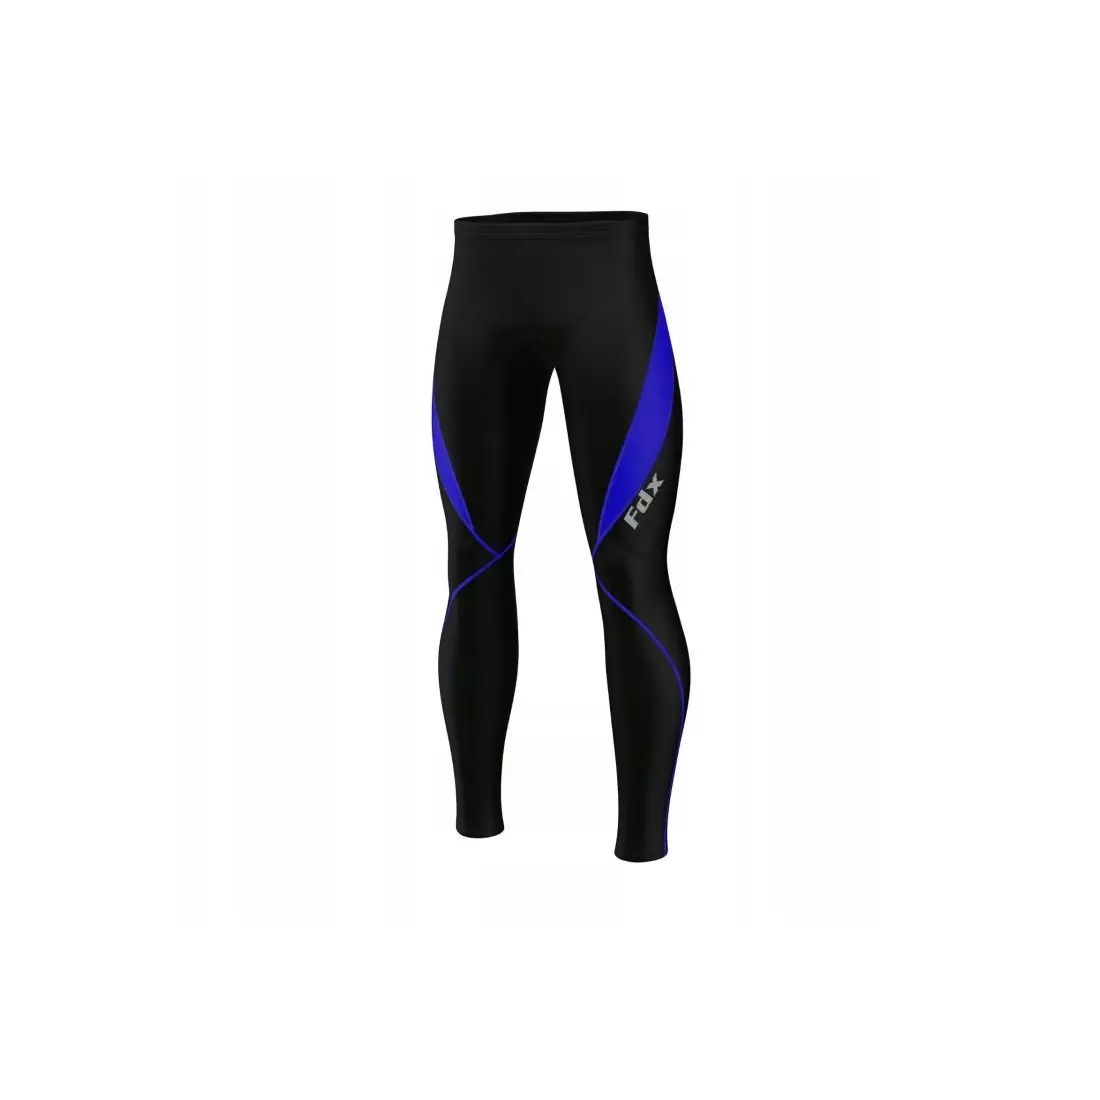 FDX 1820 pánské zateplené cyklistické kalhoty bez šle, černé a modré